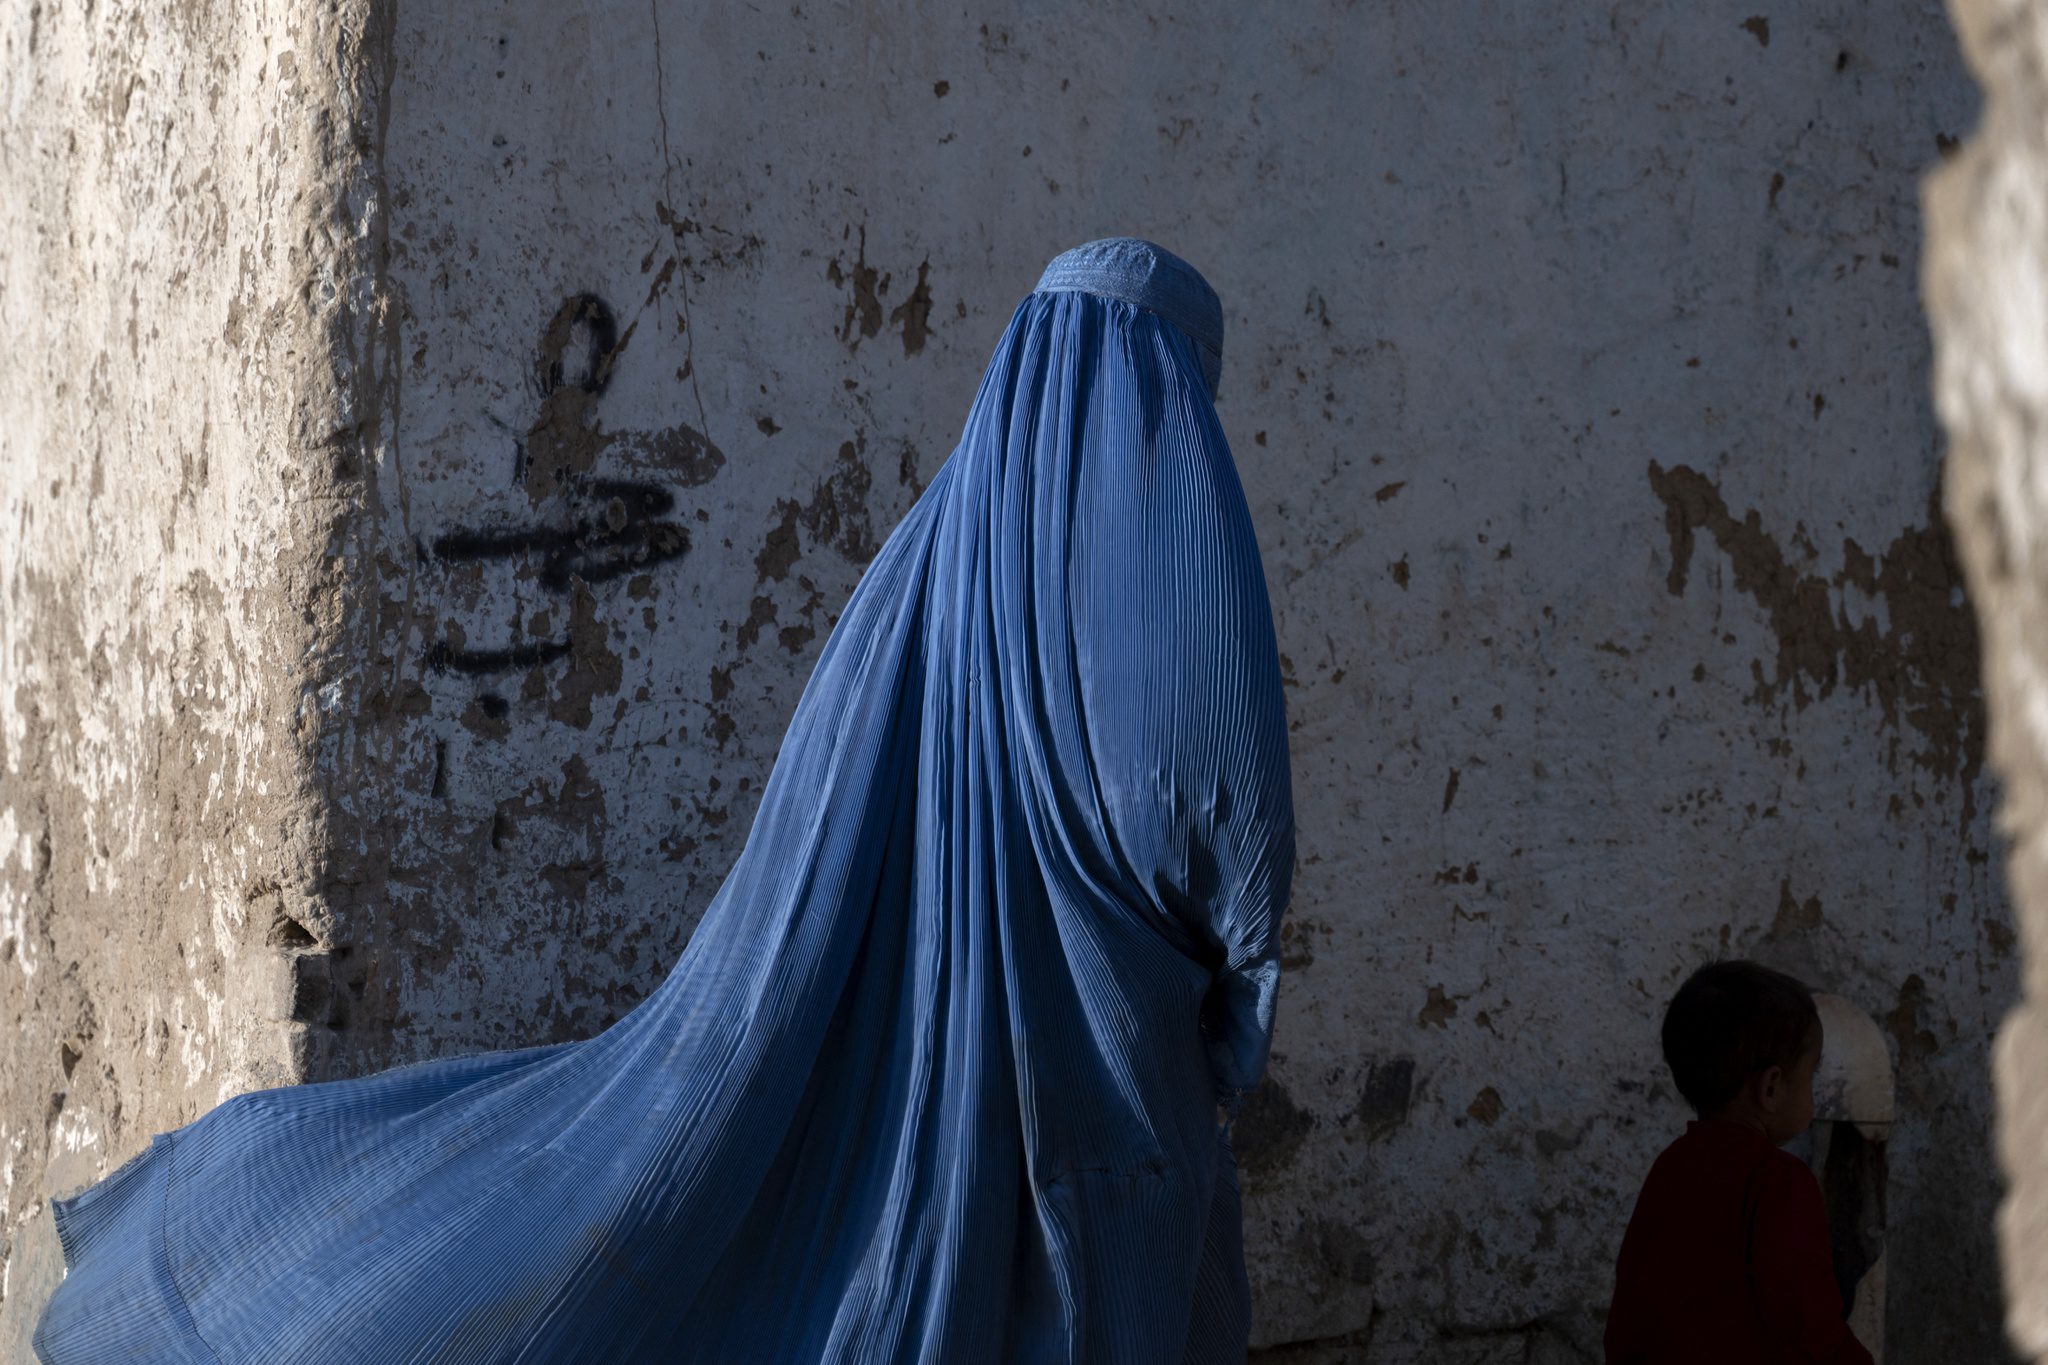 Taliban ra sắc lệnh yêu cầu phụ nữ Afghanistan trùm kín từ đầu đến chân - ảnh 1